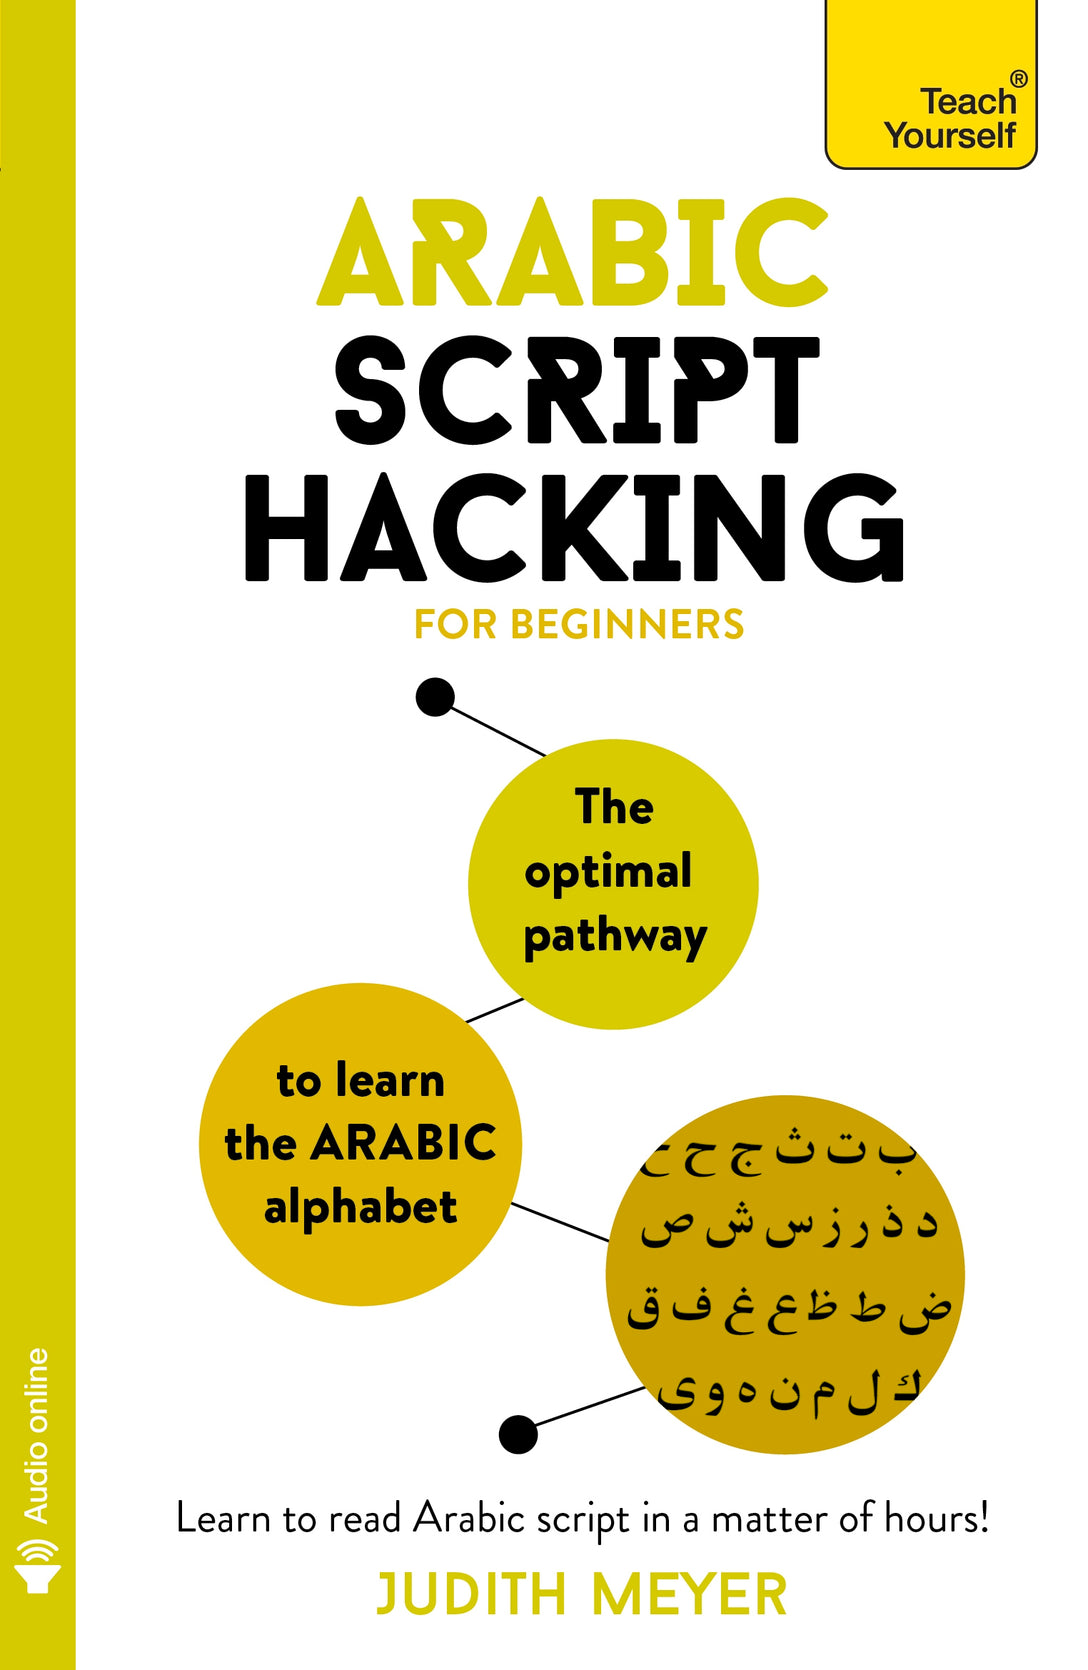 Arabic Script Hacking by Judith Meyer